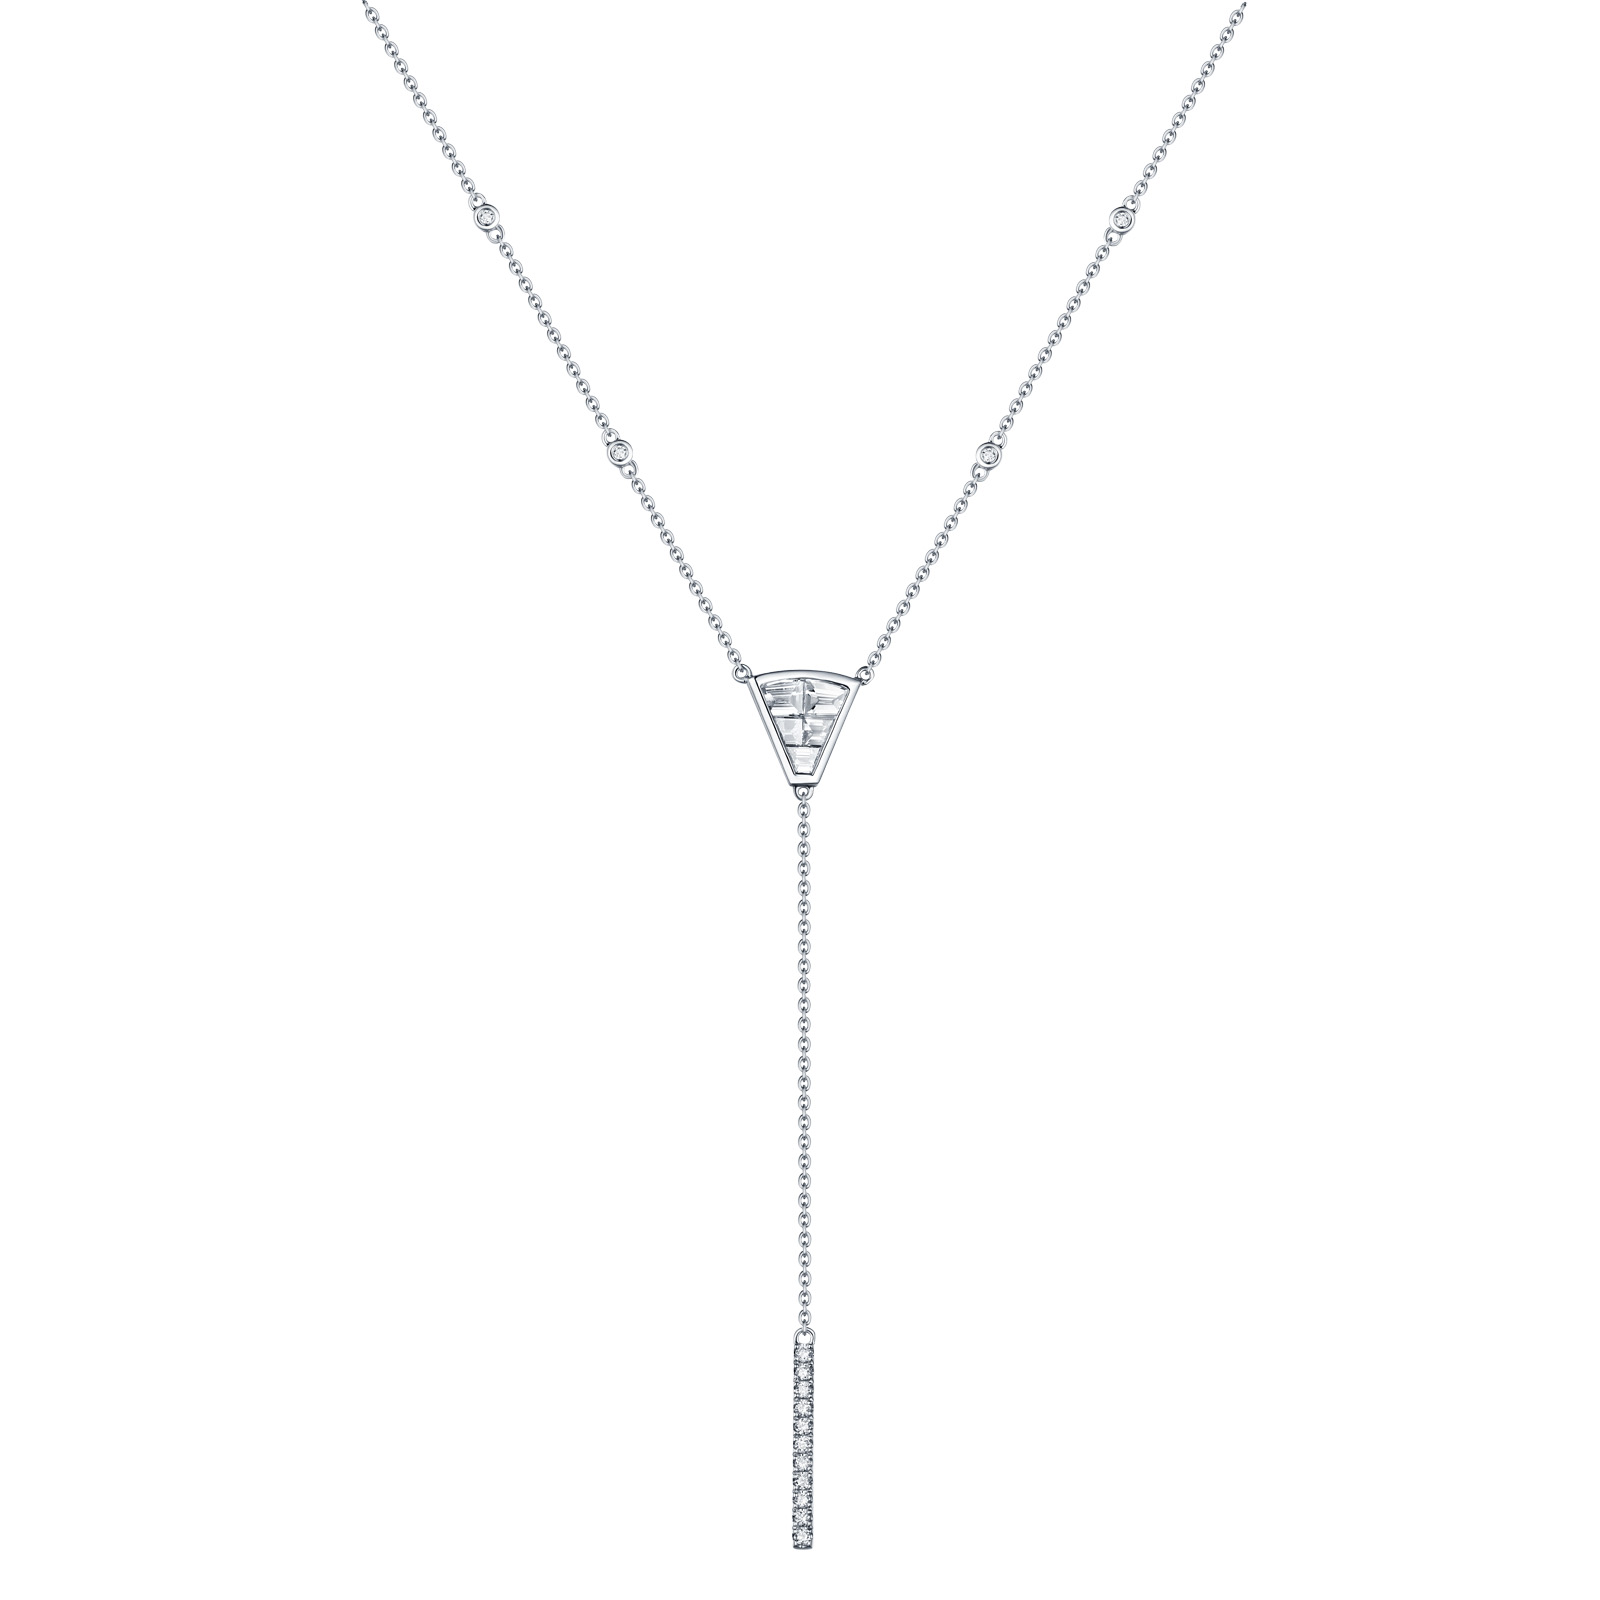 NL26351WHT- 14K White Gold Diamond Necklace, 0.70 TCW